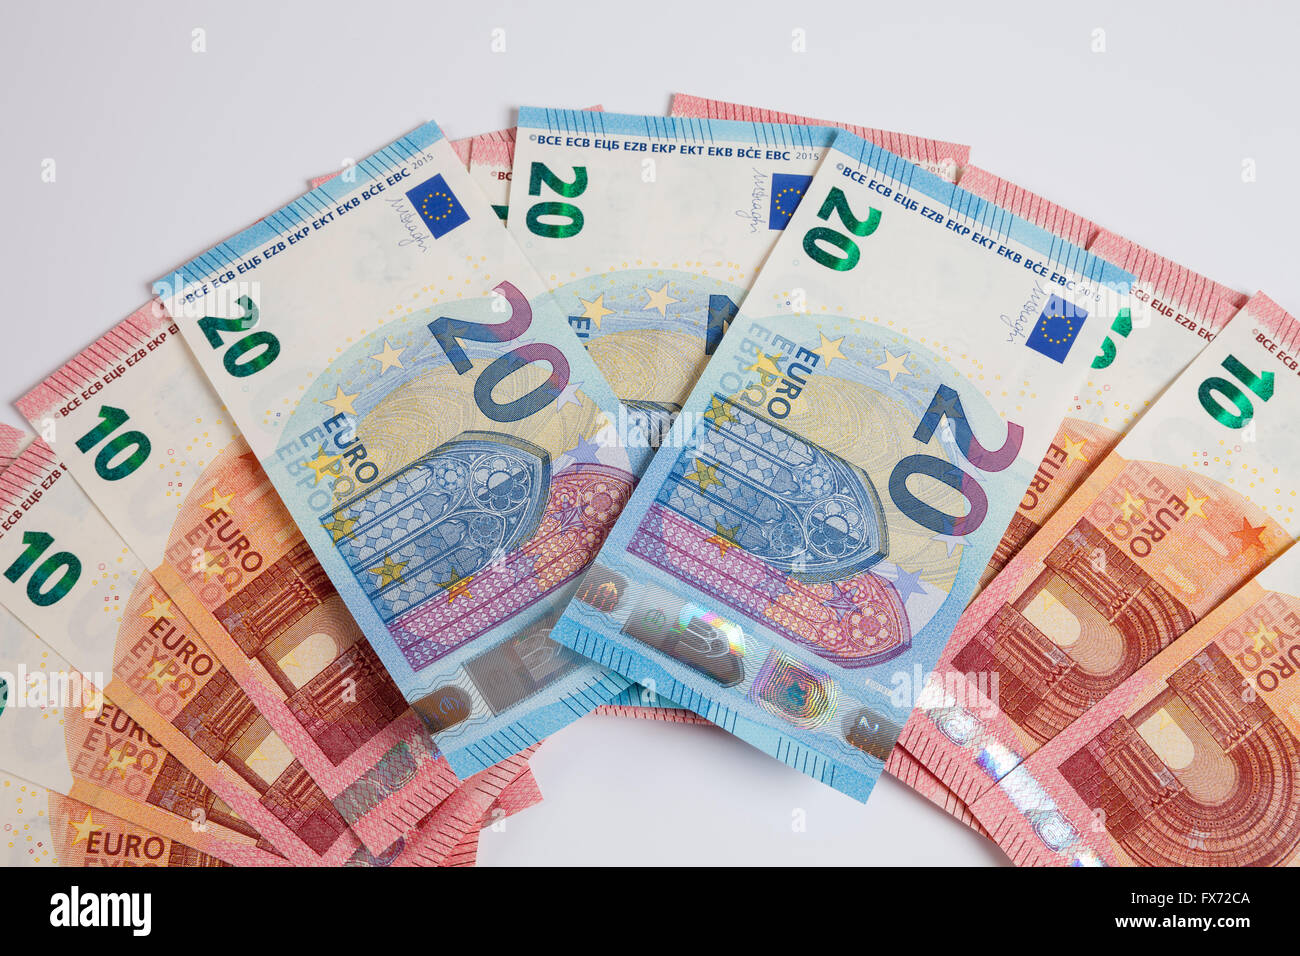 Fan di banconote, venti euro, data di release 25/11/2015, dieci euro, data di release 23/09/2014 Foto Stock